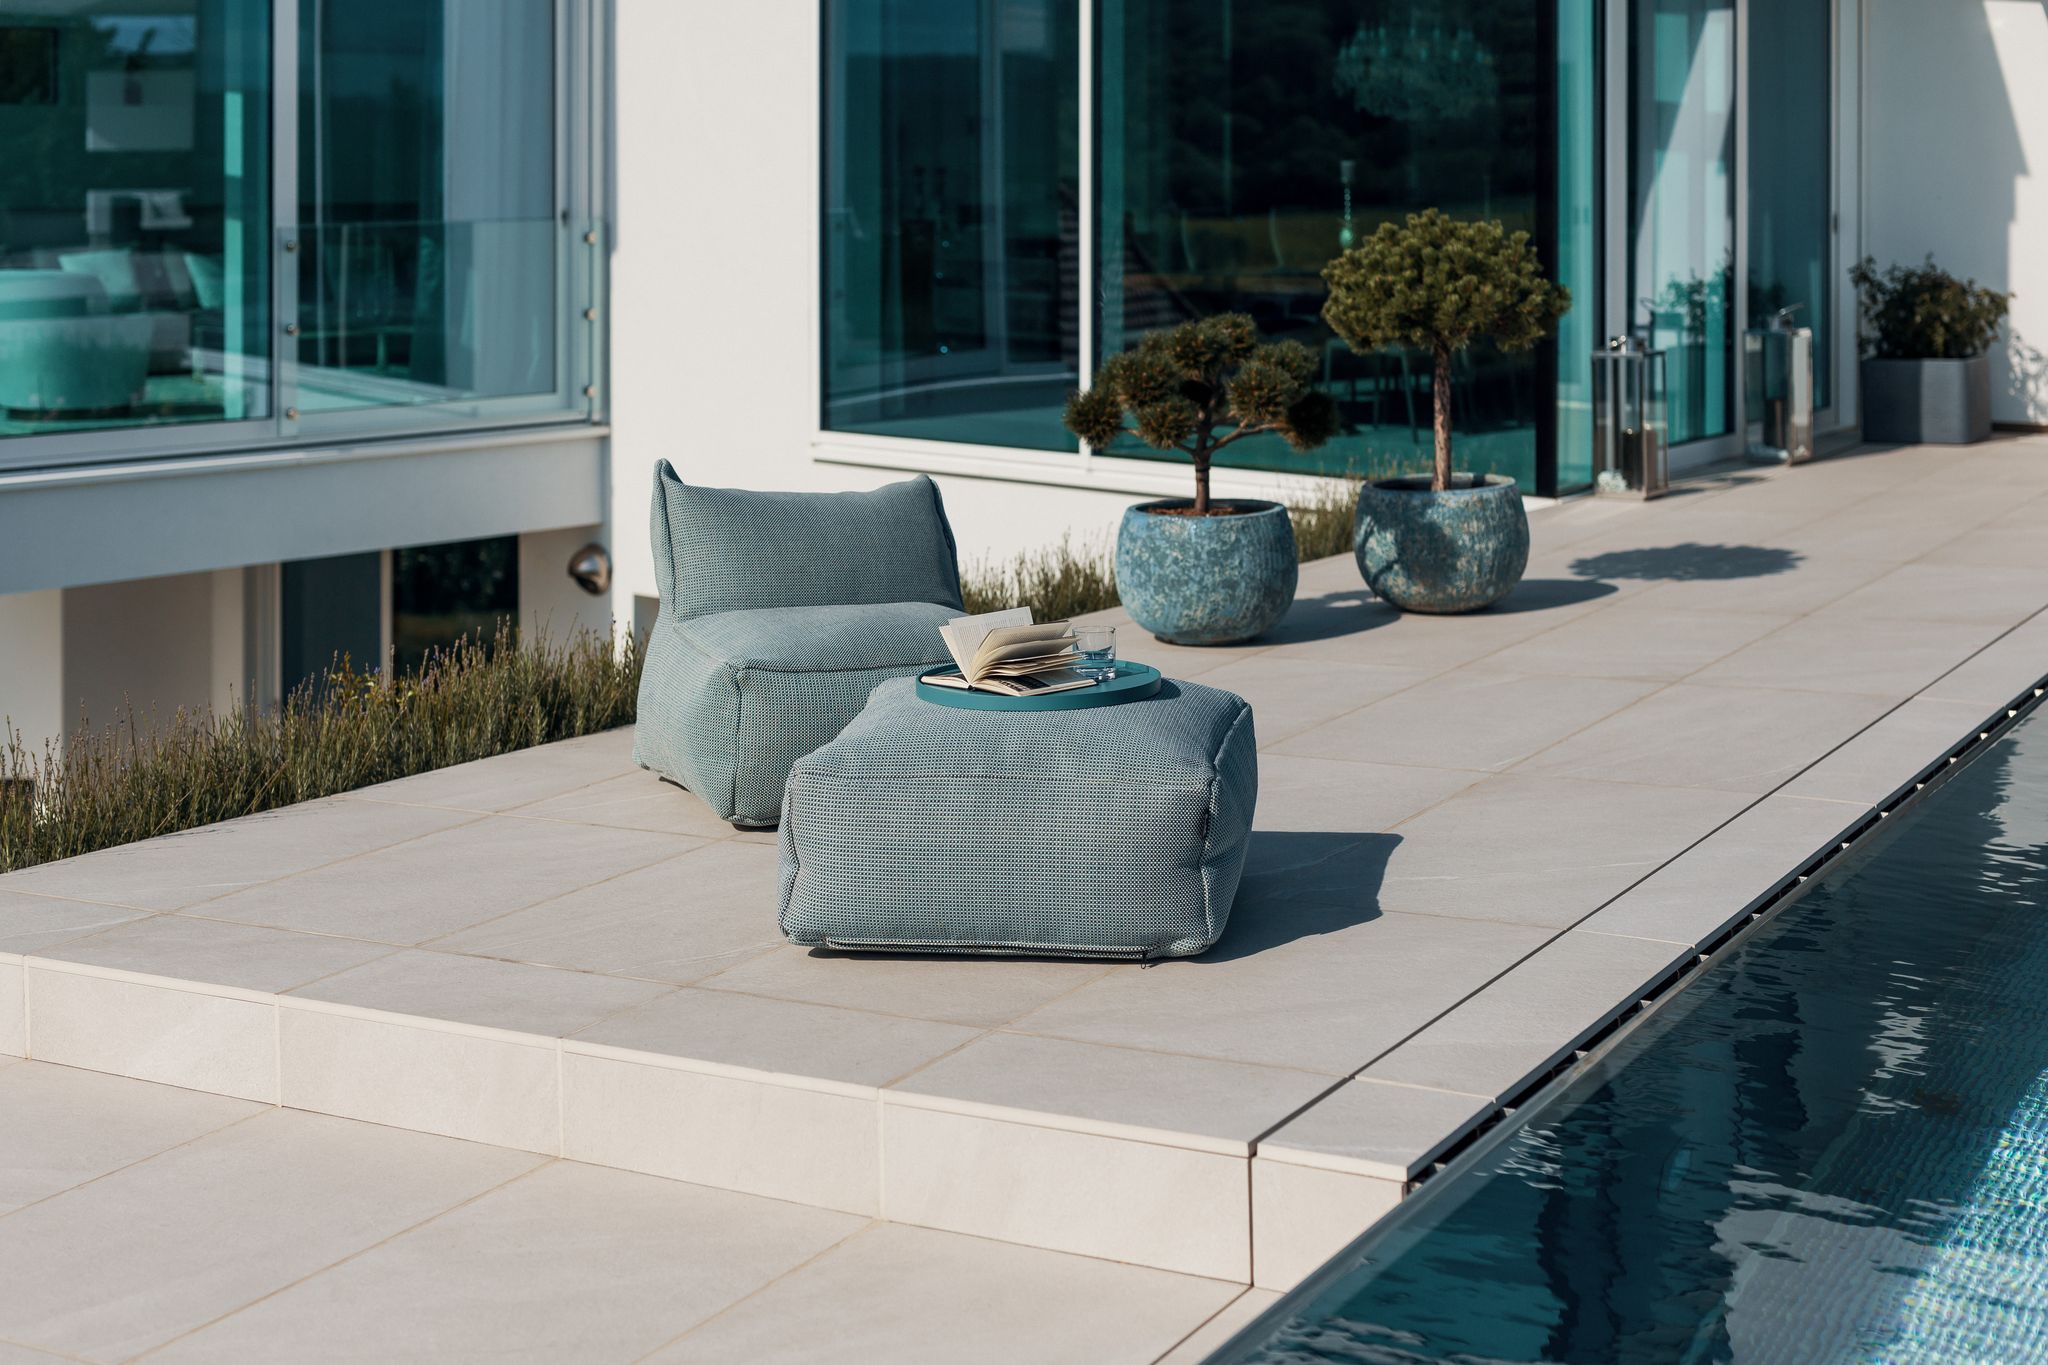 Nentwich zeigt auf diesem Foto eine geflieste Terrasse, einen Pool, Sitzpouf mit Tisch und ein schönes Haus mit vielen Glaselementen im Hintergrund.